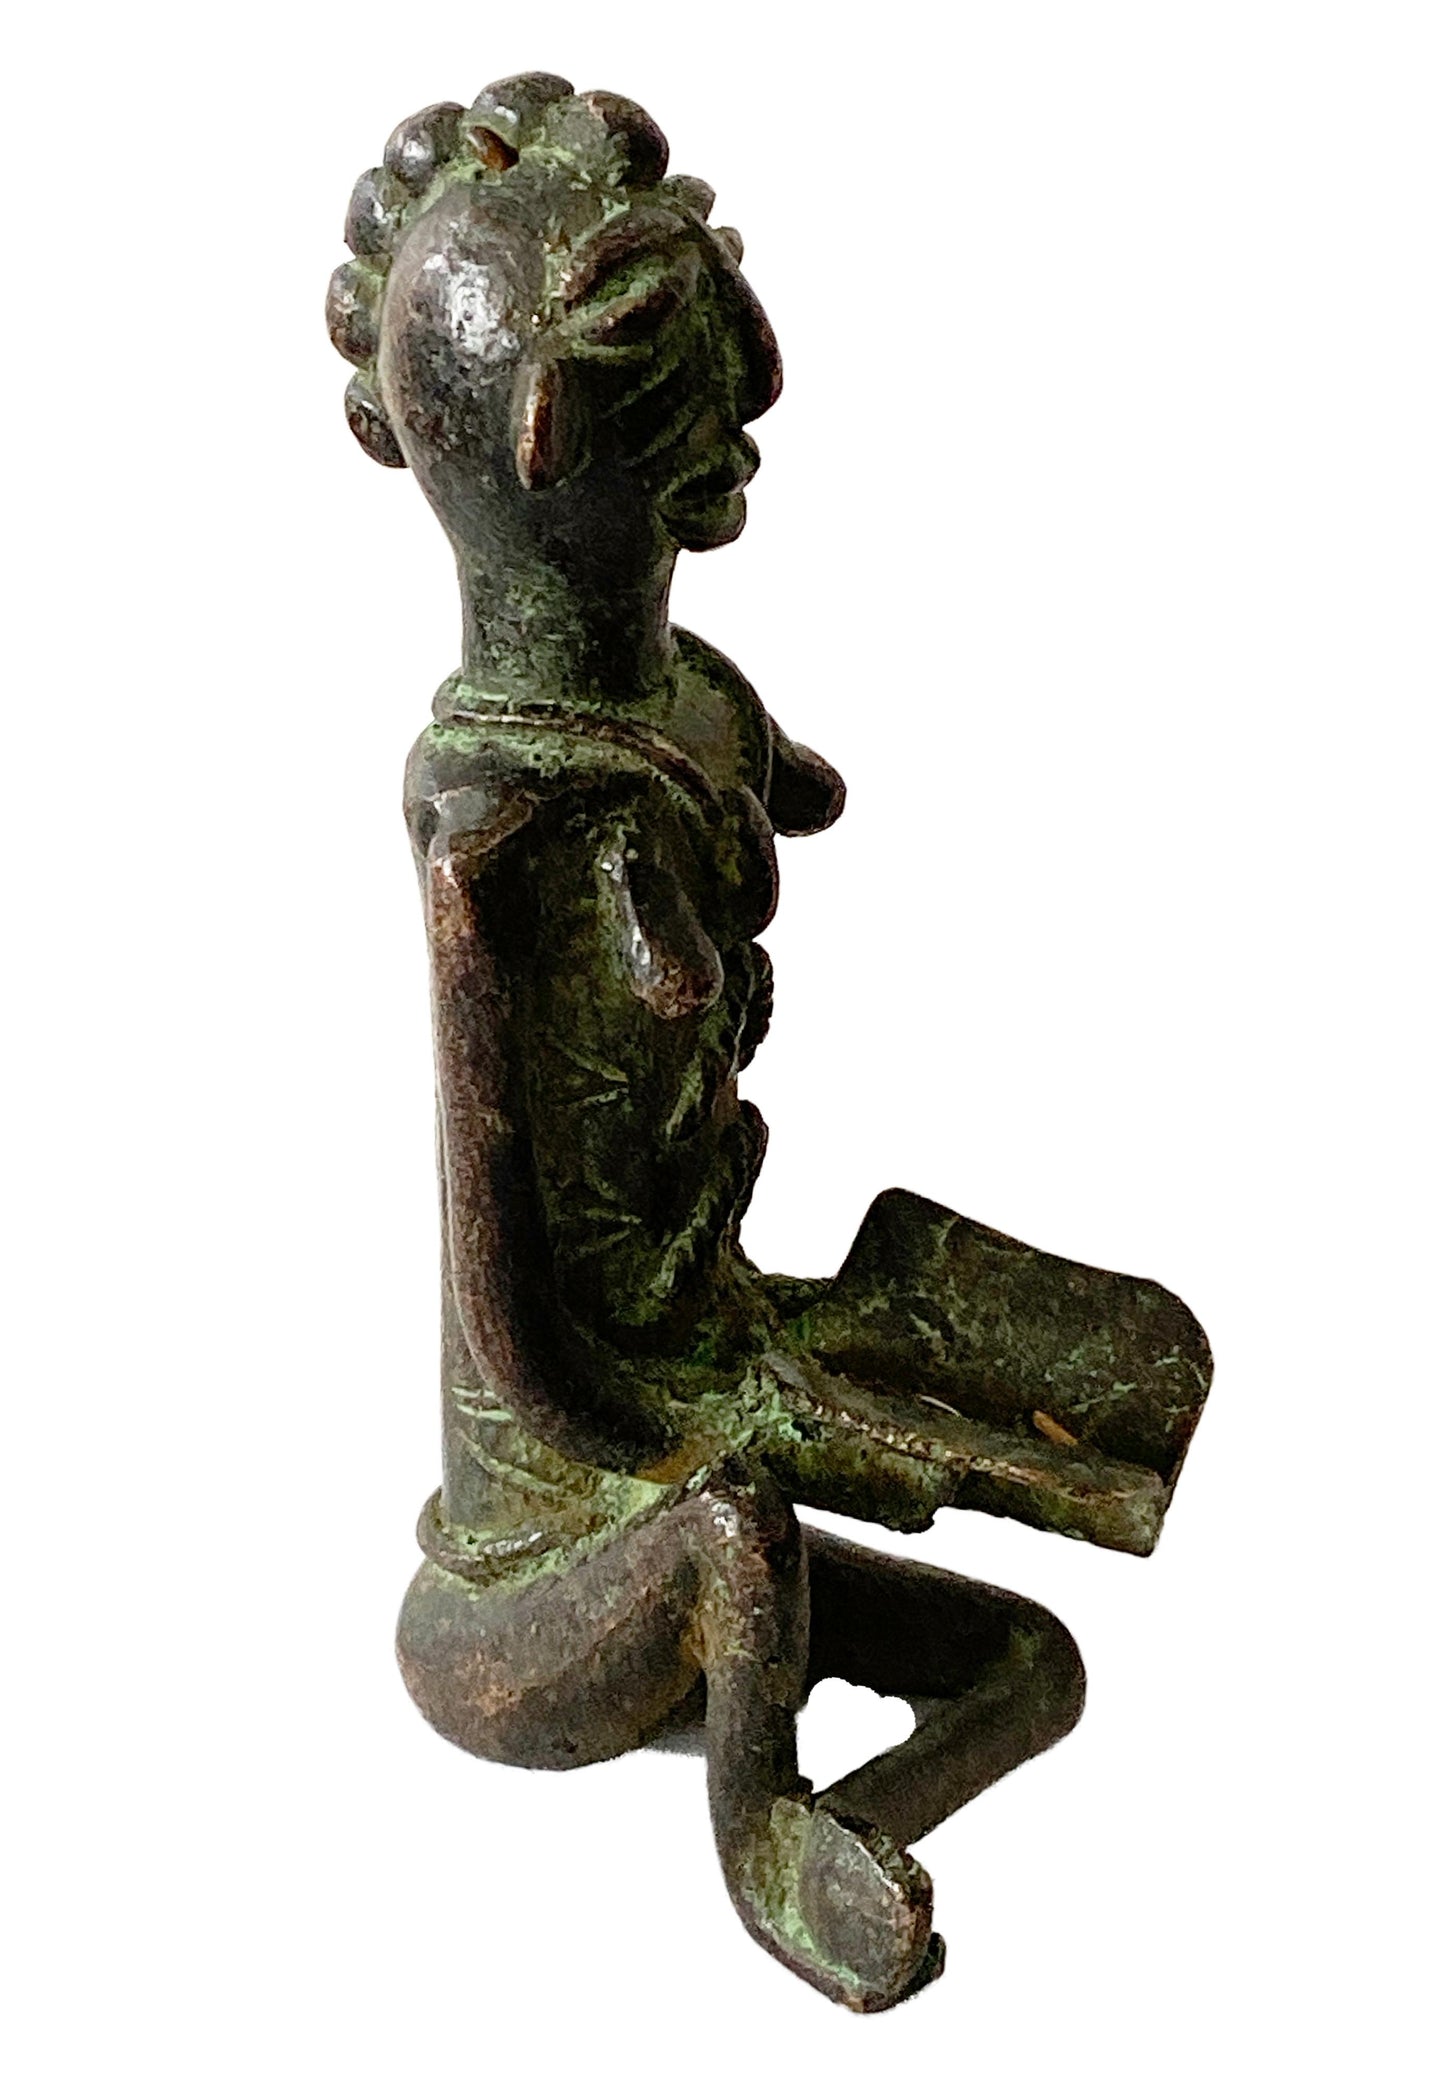 #774 Superb Benin Bronze of a seated female Nigeria African 5.75" H